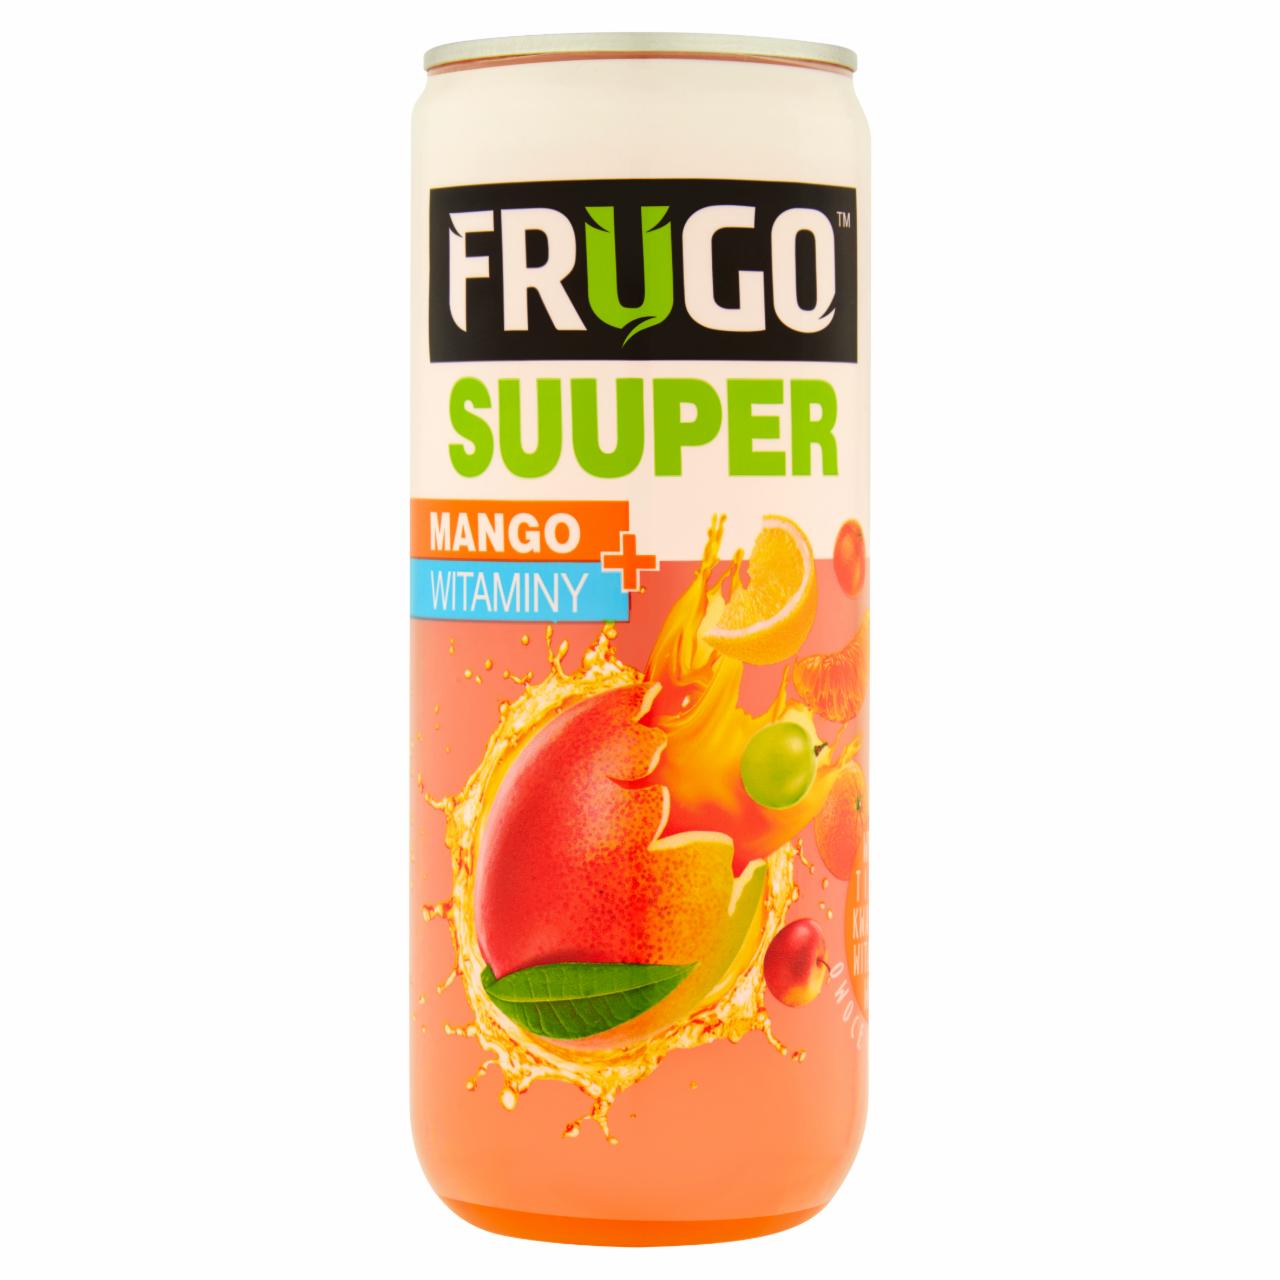 Zdjęcia - Frugo Suuper Mango + witaminy Napój wieloowocowy niegazowany 315 ml